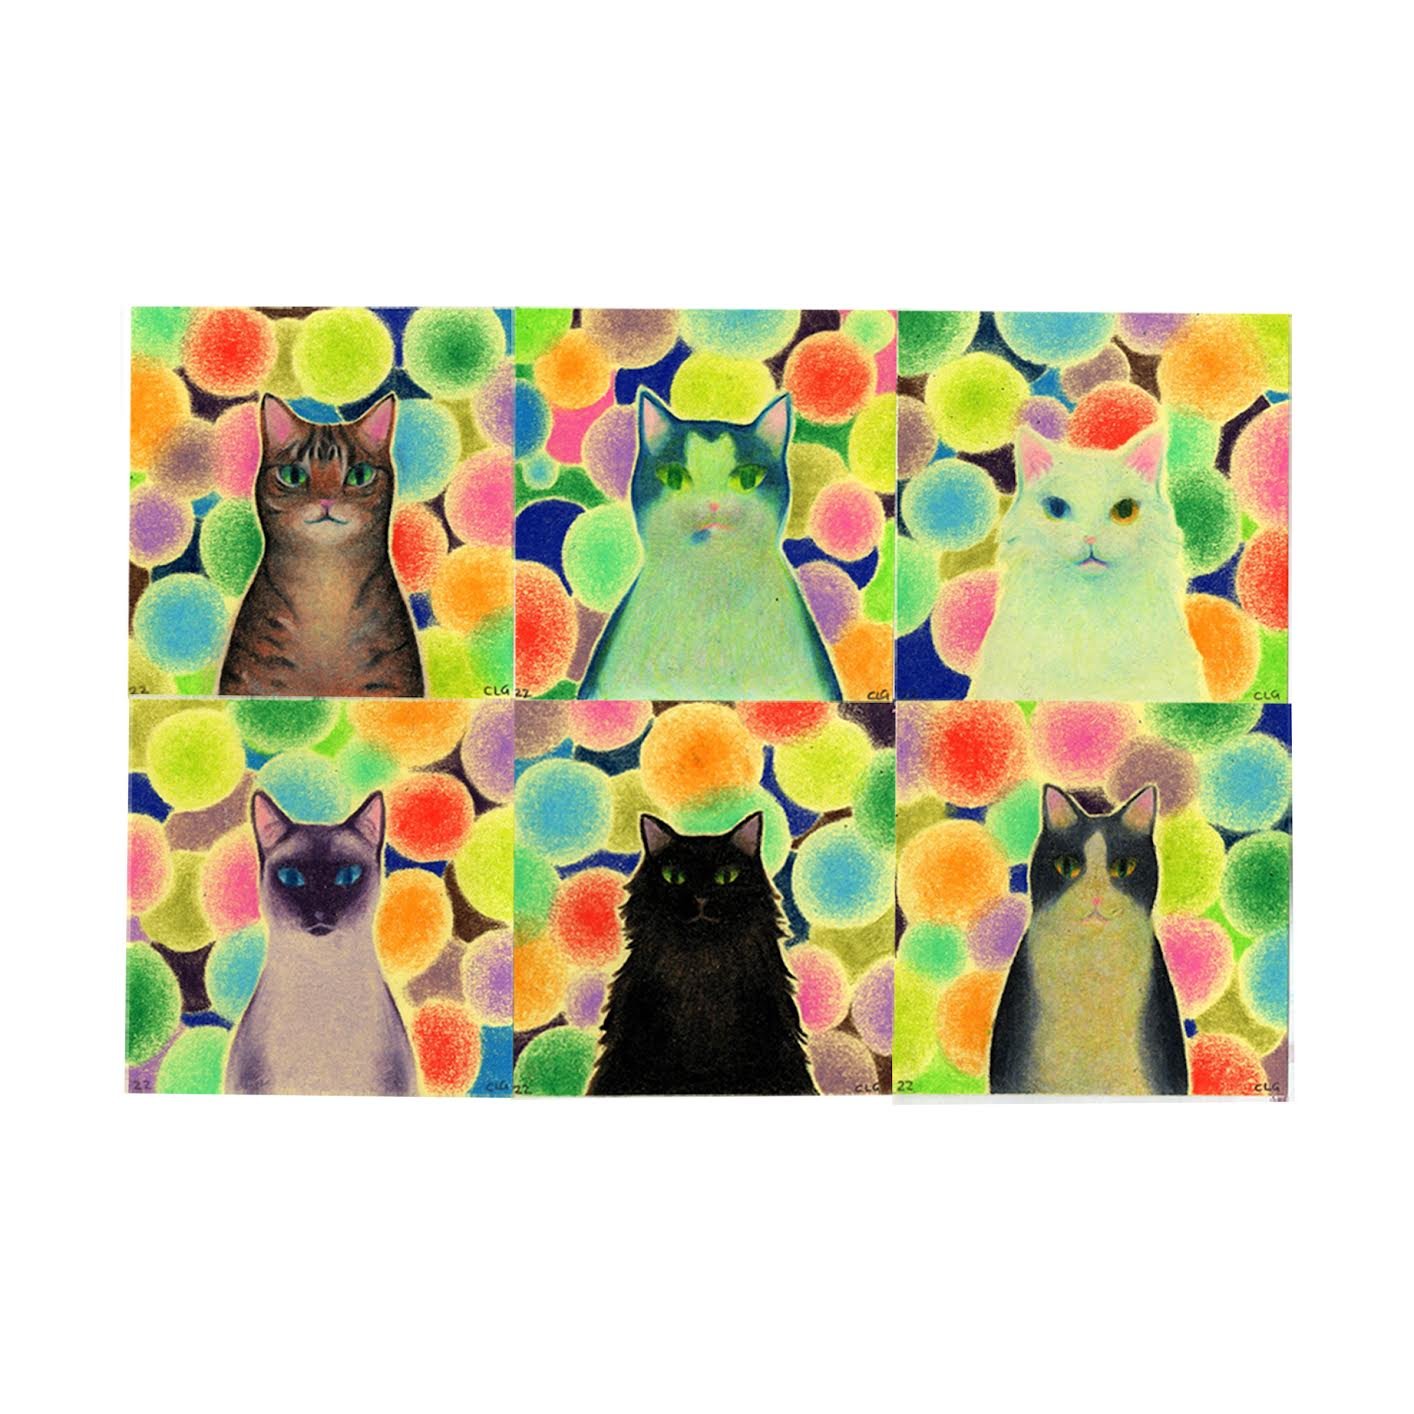  “ Cat Portraits” Set 1   Colored Pencil  Post-It Notes  3 x 3” 